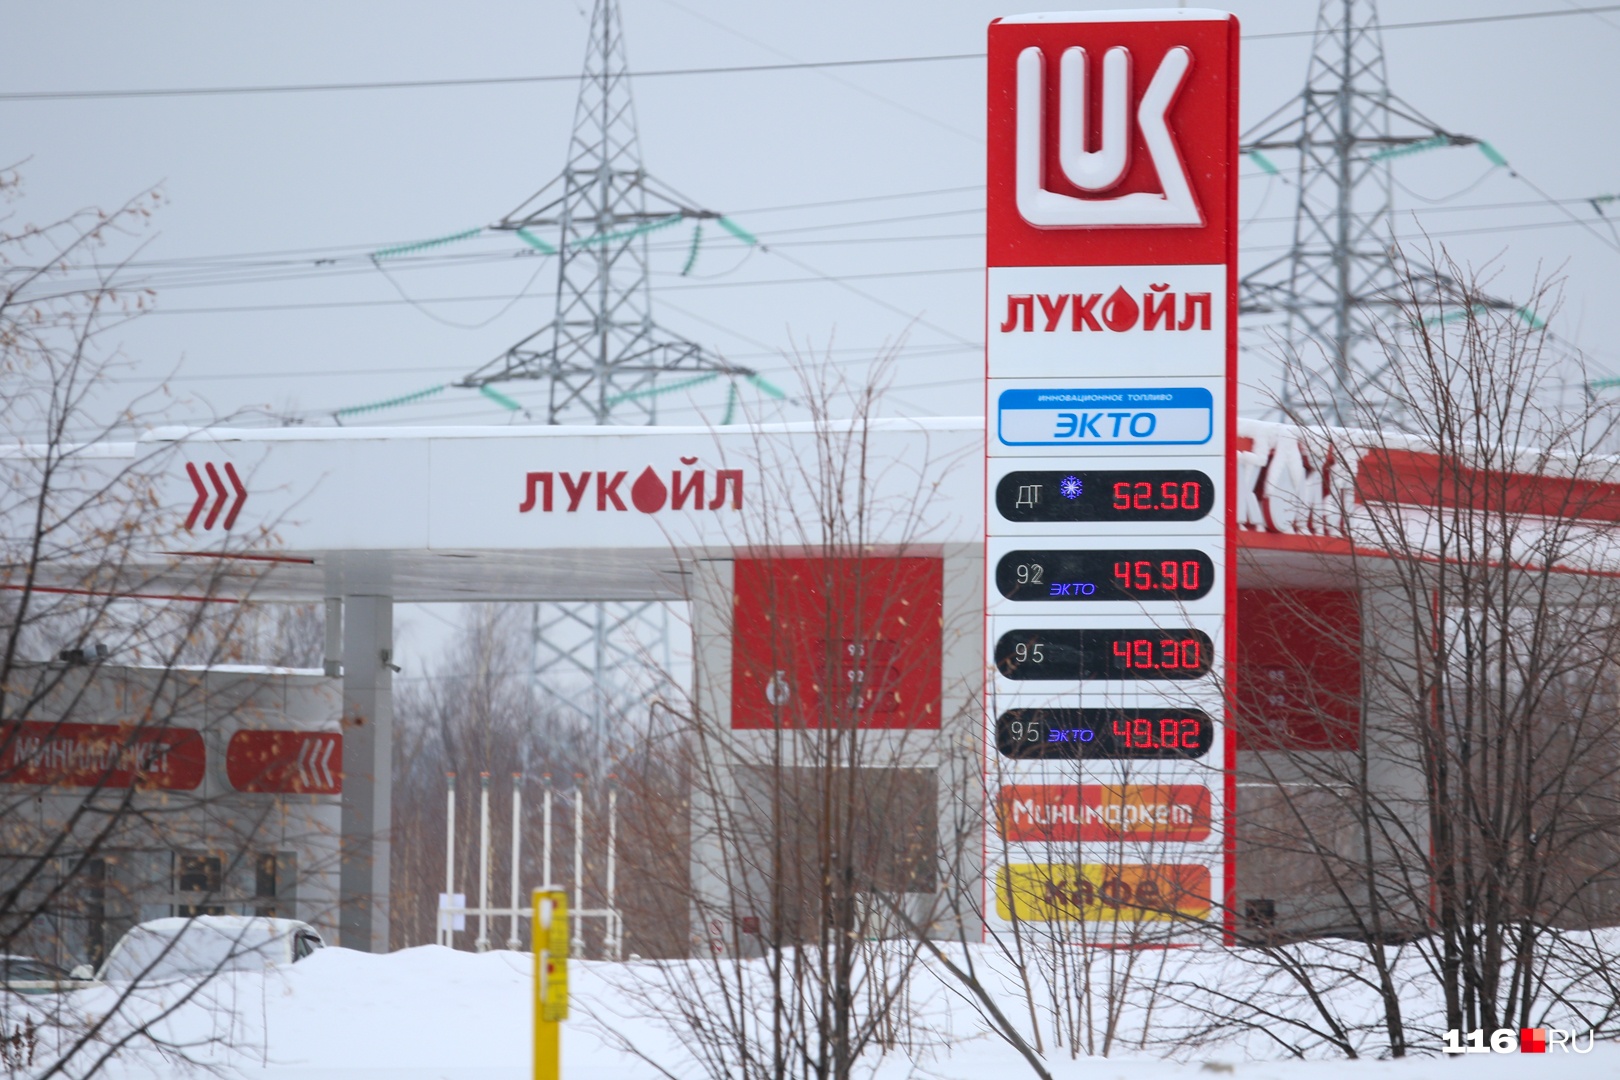 Такие цены на заправках в Казани: дизельное топливо — <nobr class="_">52,5 рубля</nobr> за литр, бензин — от <nobr class="_">45,9 рубля</nobr>